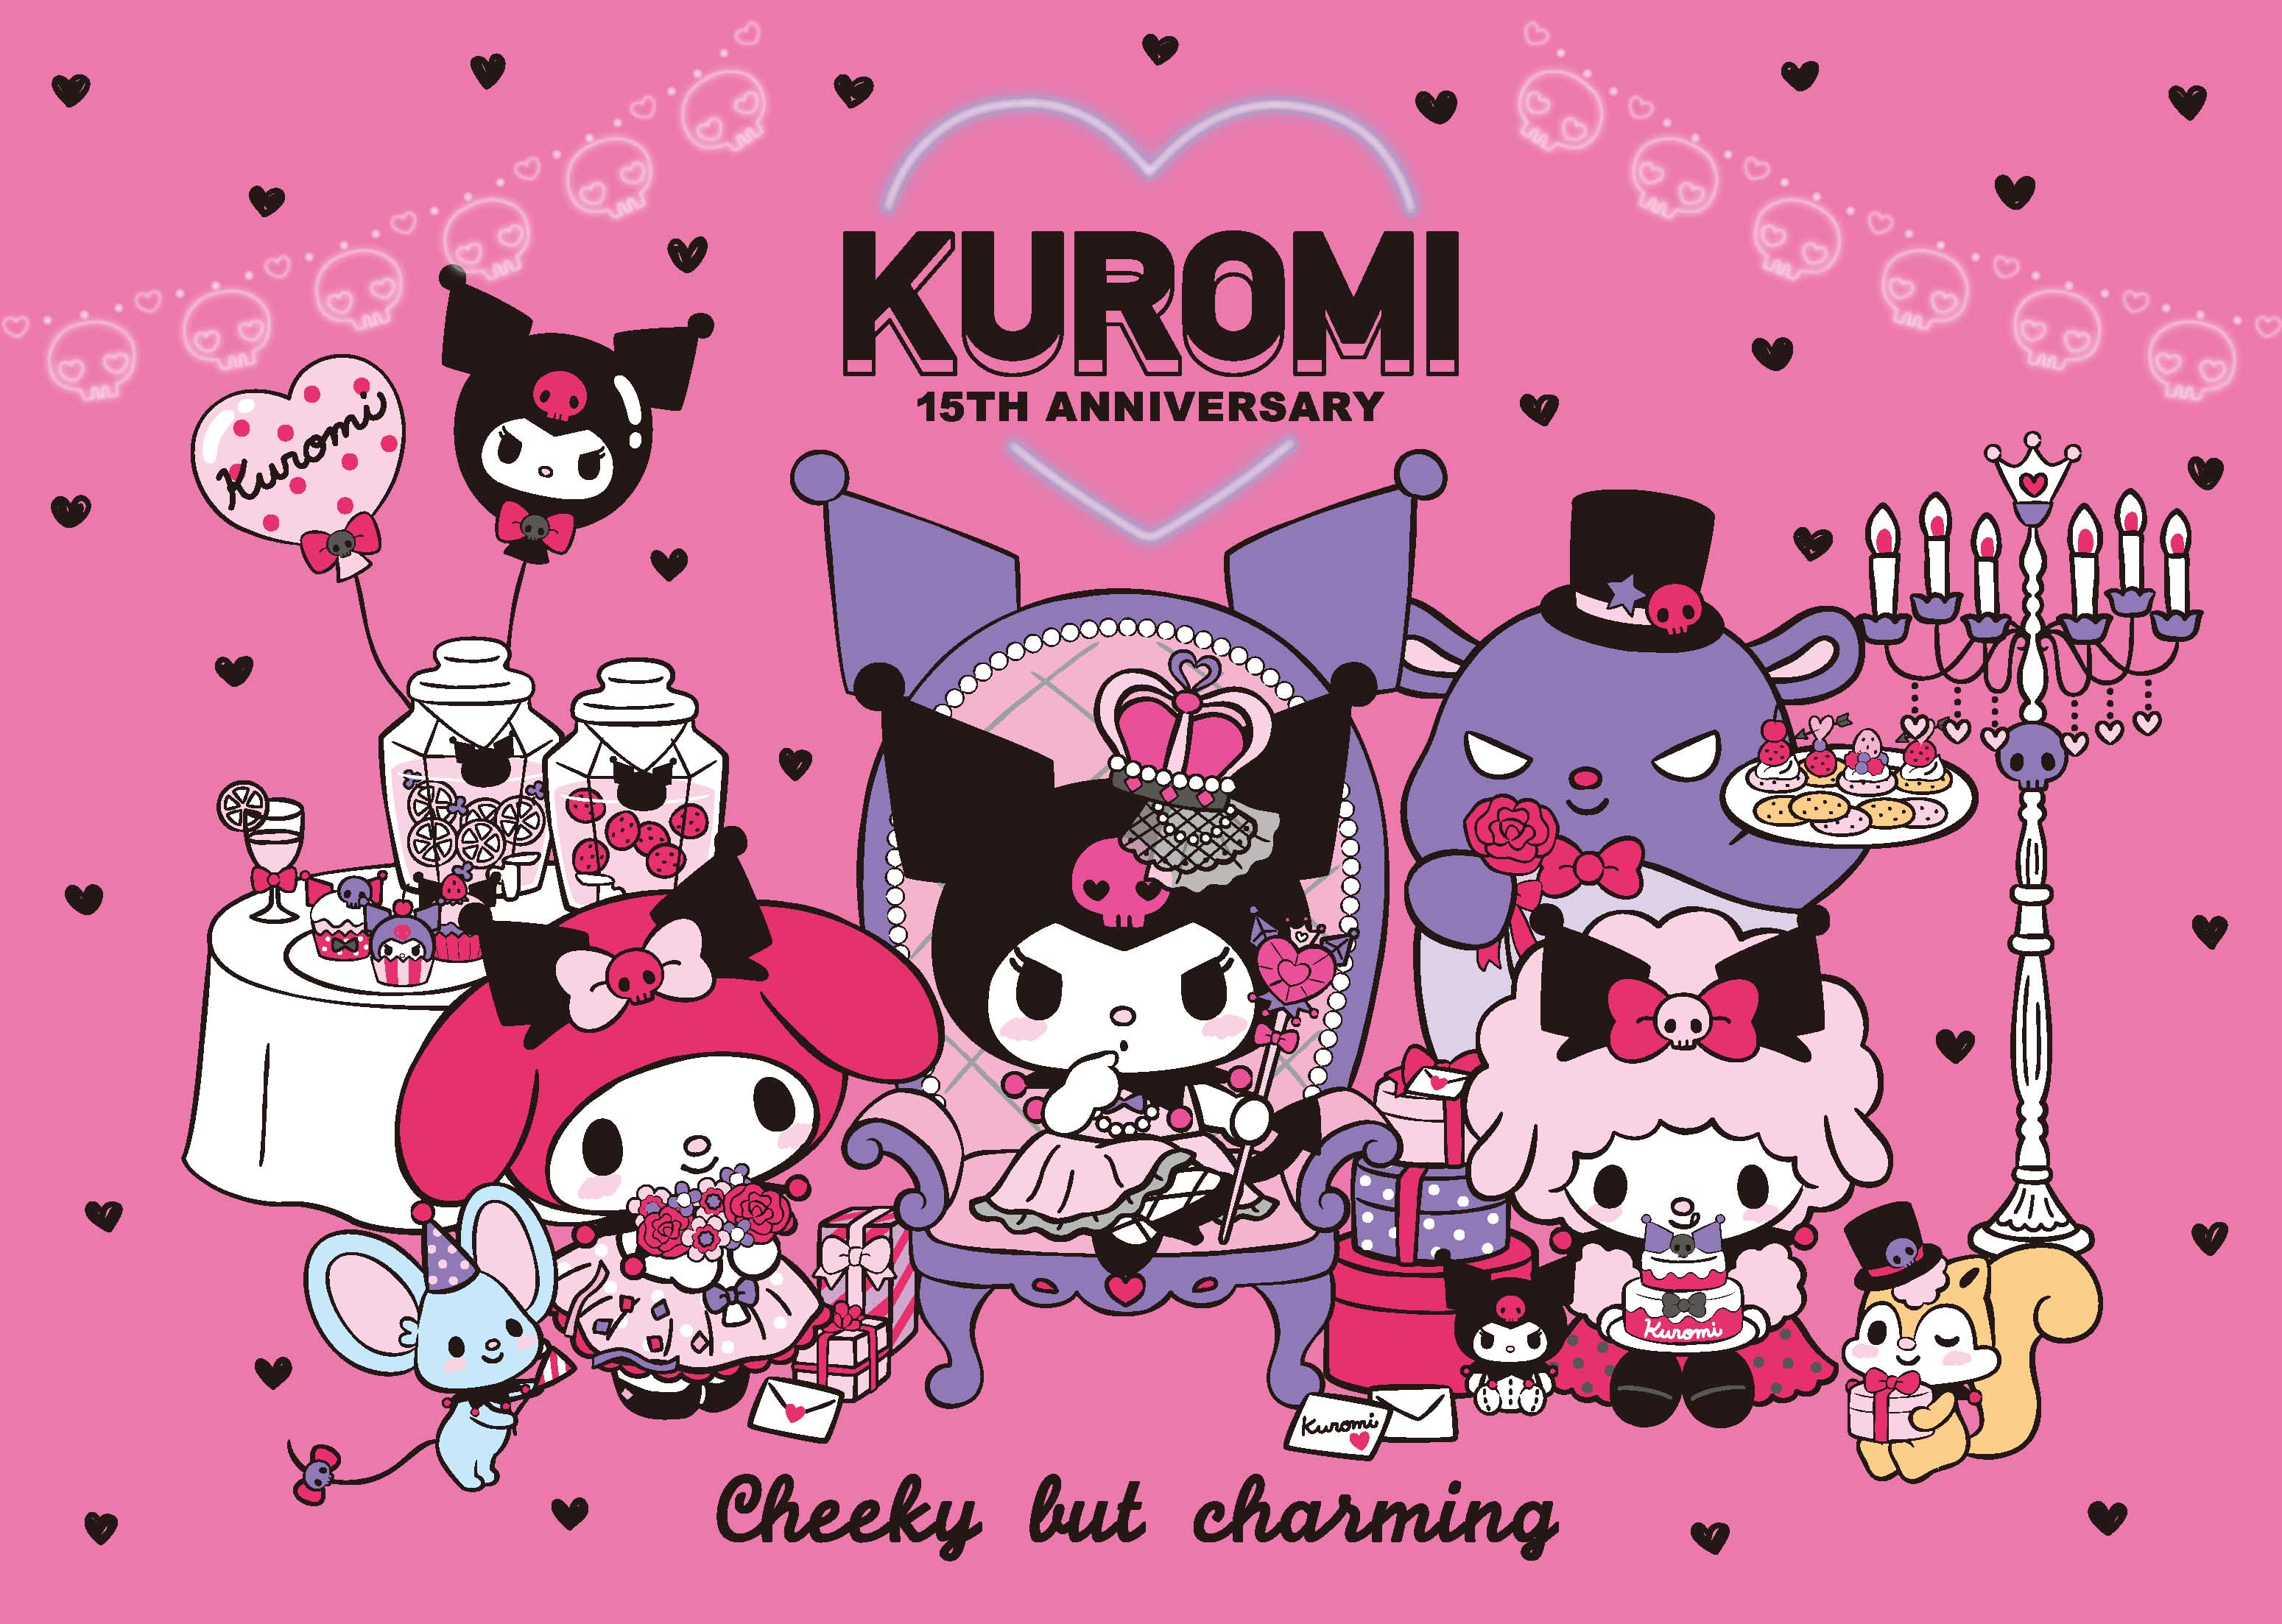 Kuromi's 5